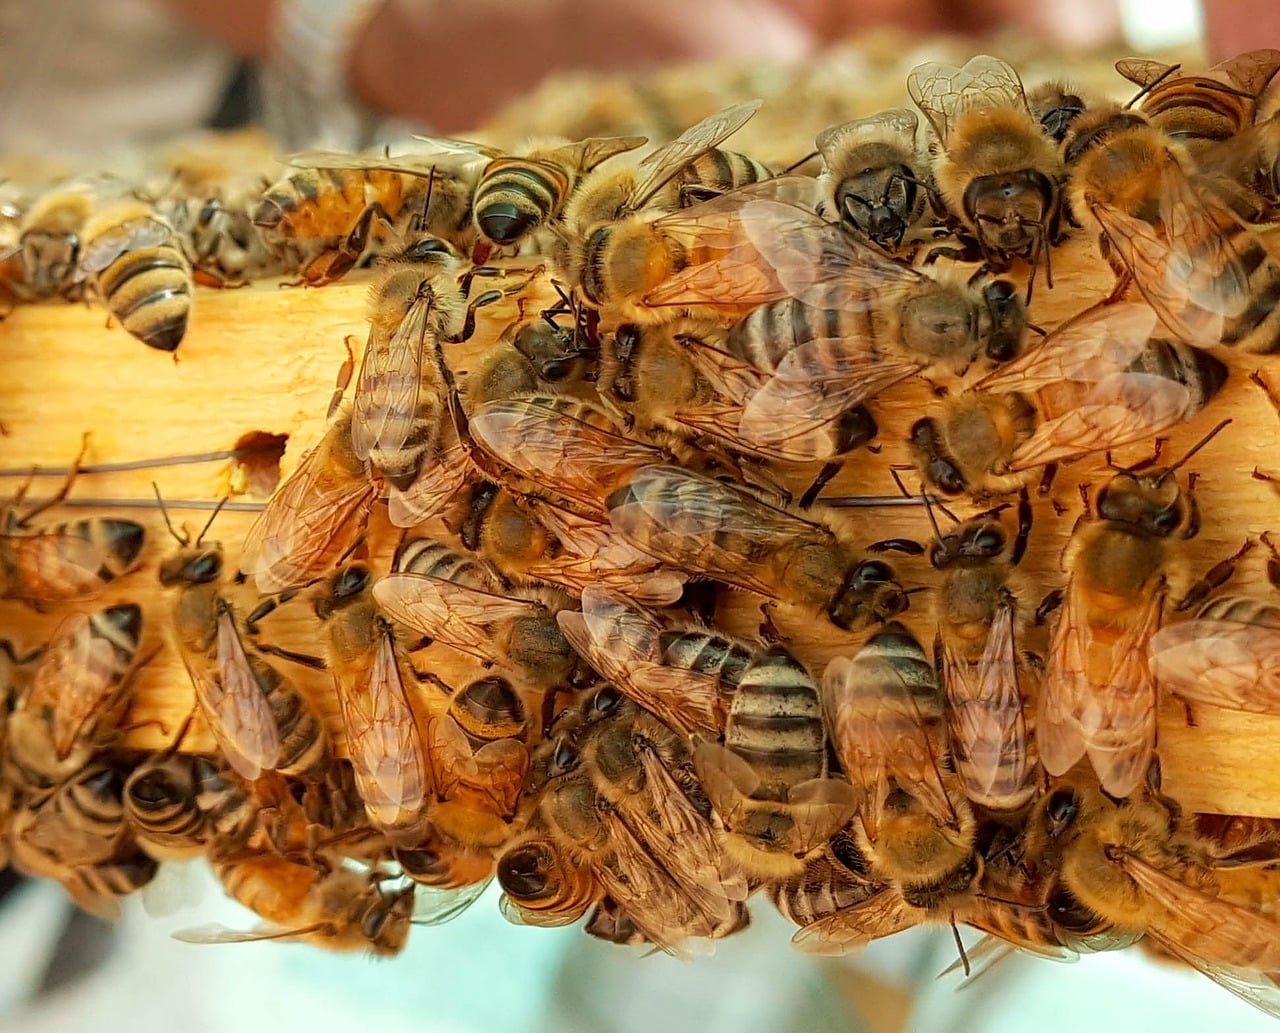 Honeybees Can Do Basic Math